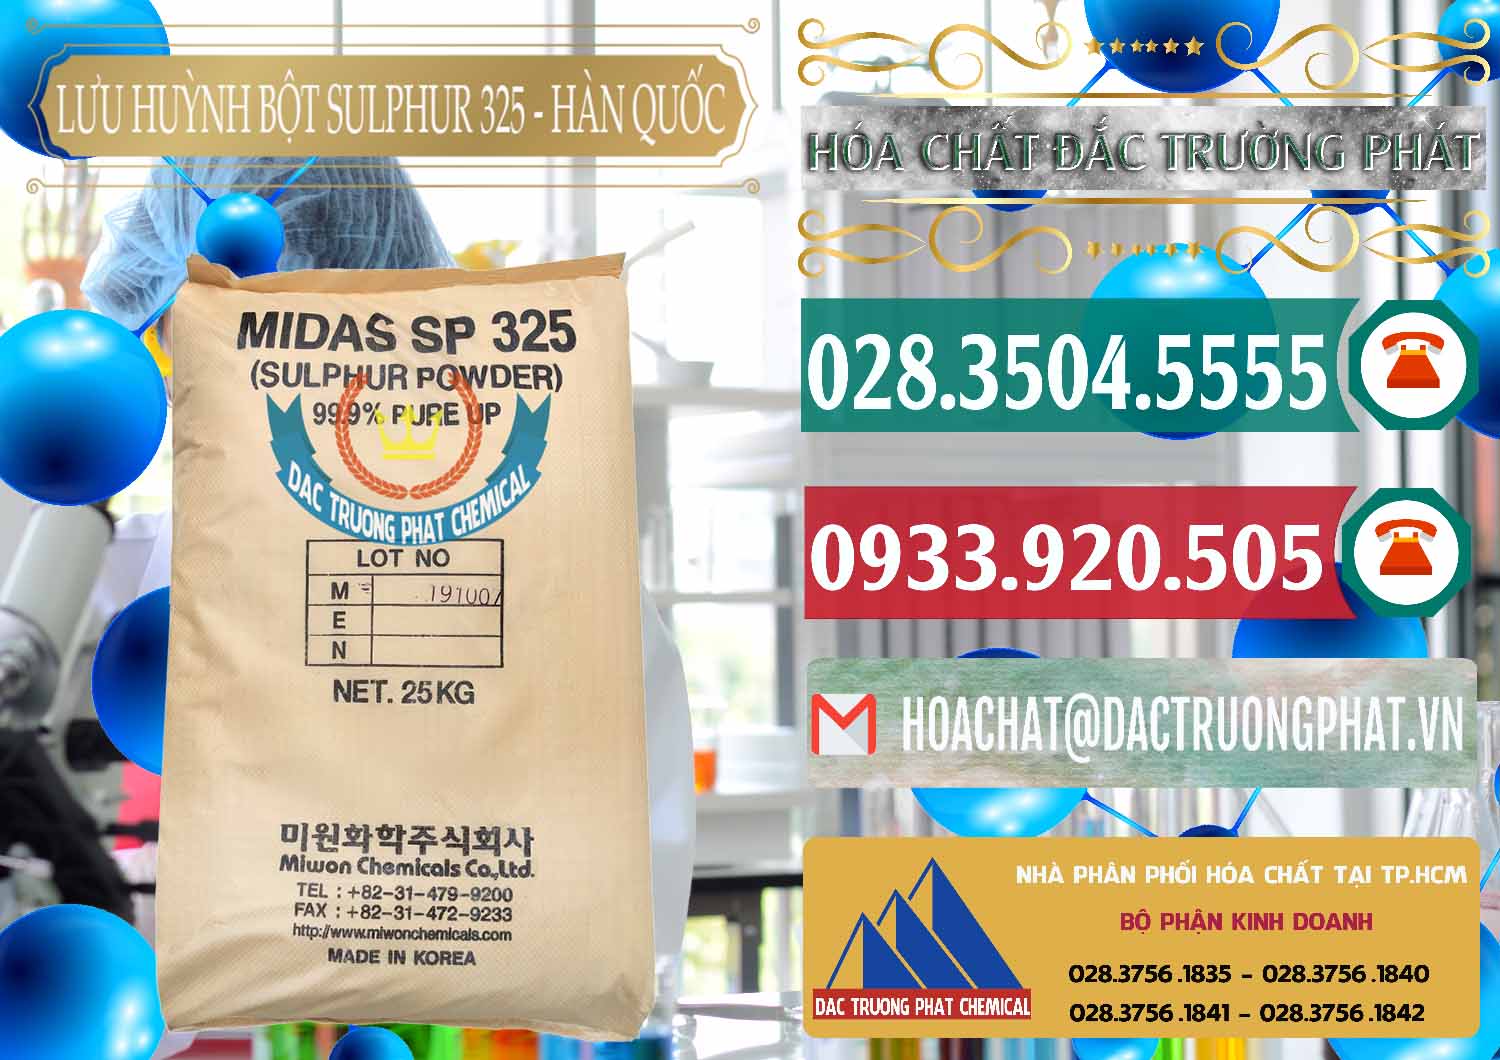 Chuyên cung ứng _ bán Lưu huỳnh Bột - Sulfur Powder Midas SP 325 Hàn Quốc Korea - 0198 - Nơi chuyên phân phối ( nhập khẩu ) hóa chất tại TP.HCM - muabanhoachat.vn